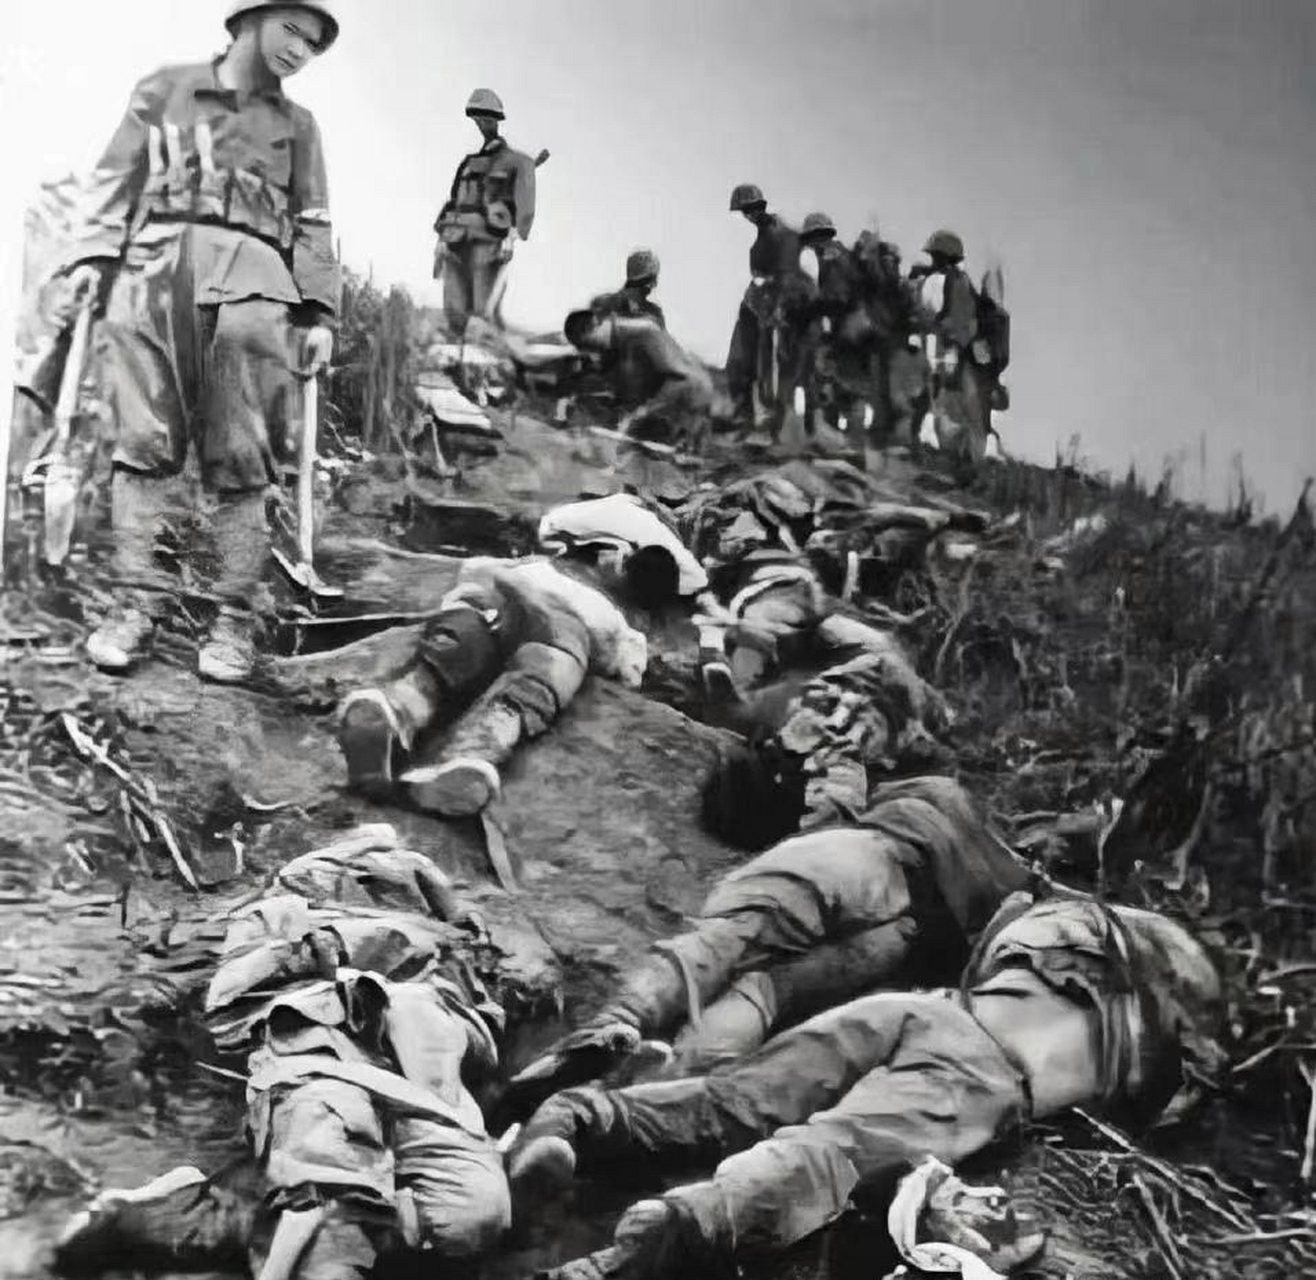 老山战役中,牺牲的解放军战士遗体堆满了山坡,令人痛心